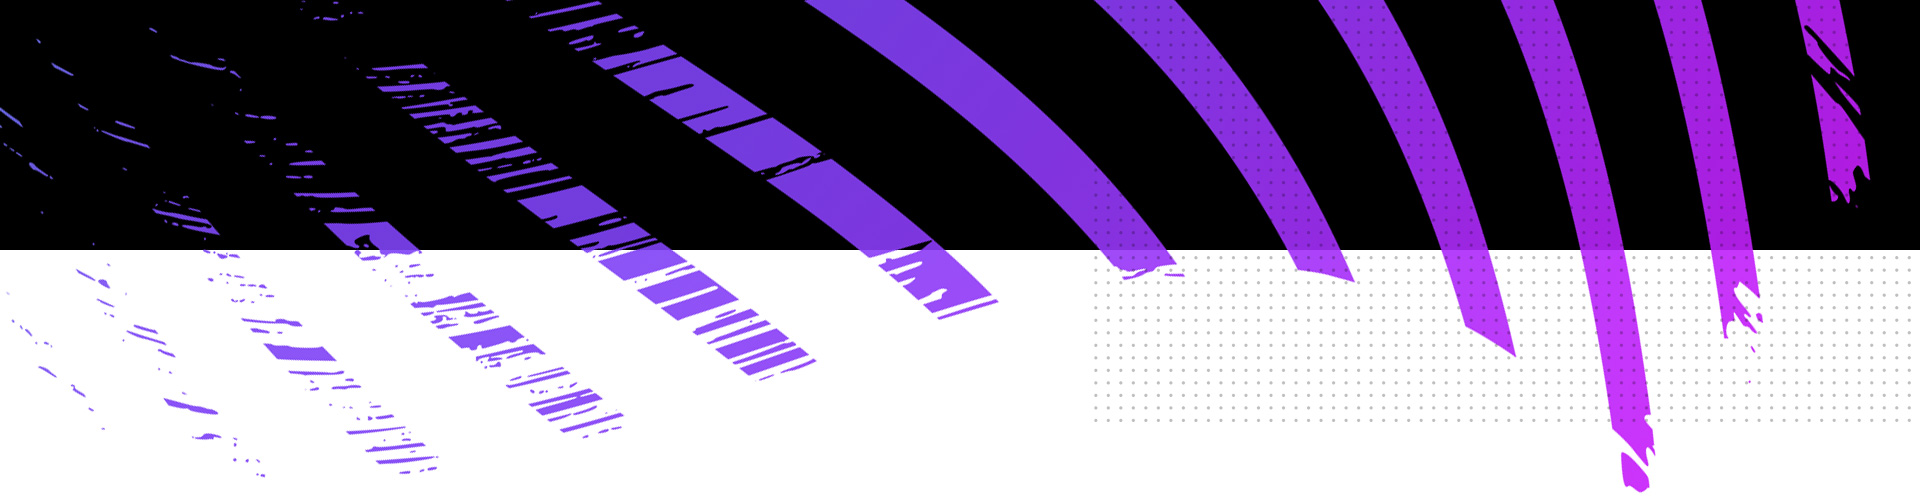 Черно-фиолетовый полосатый стилизованный фон с точками